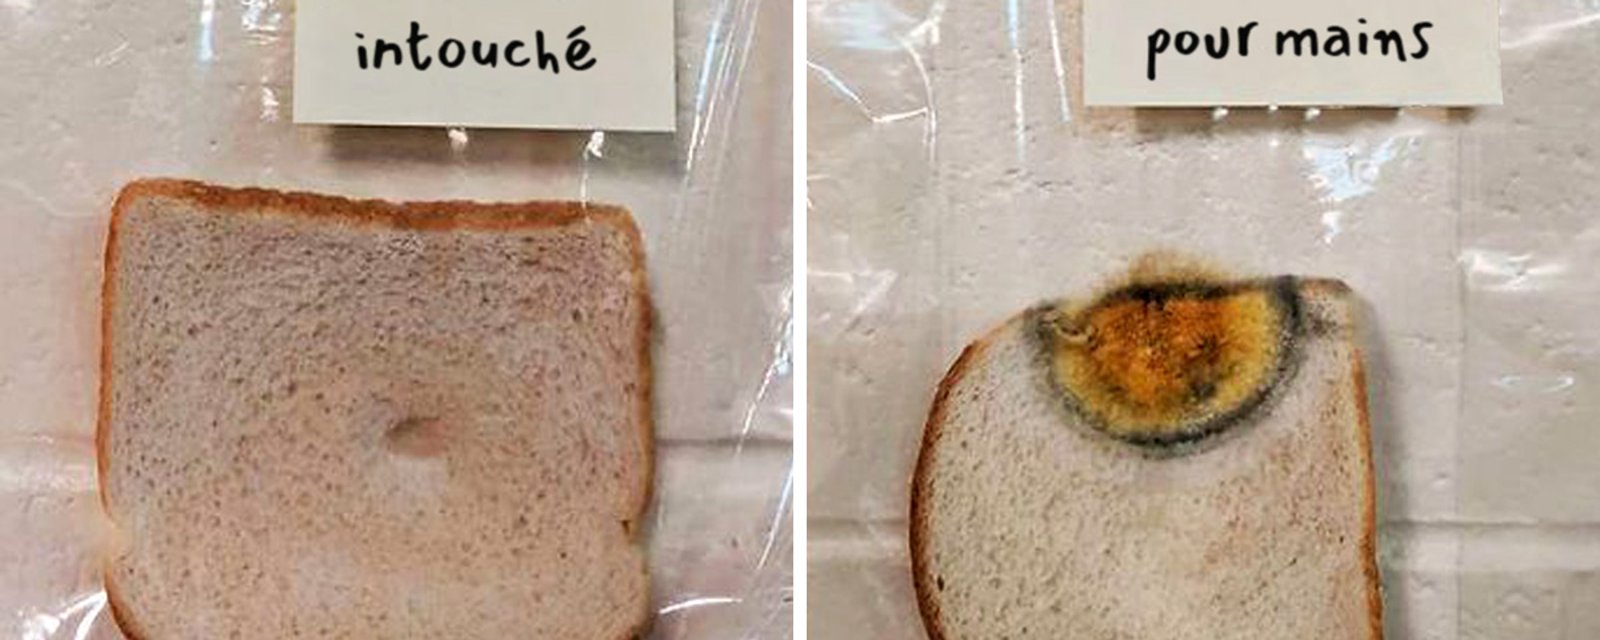 Des élèves du primaire effectuent une expérience avec des tranches de pain et celle-ci devient virale